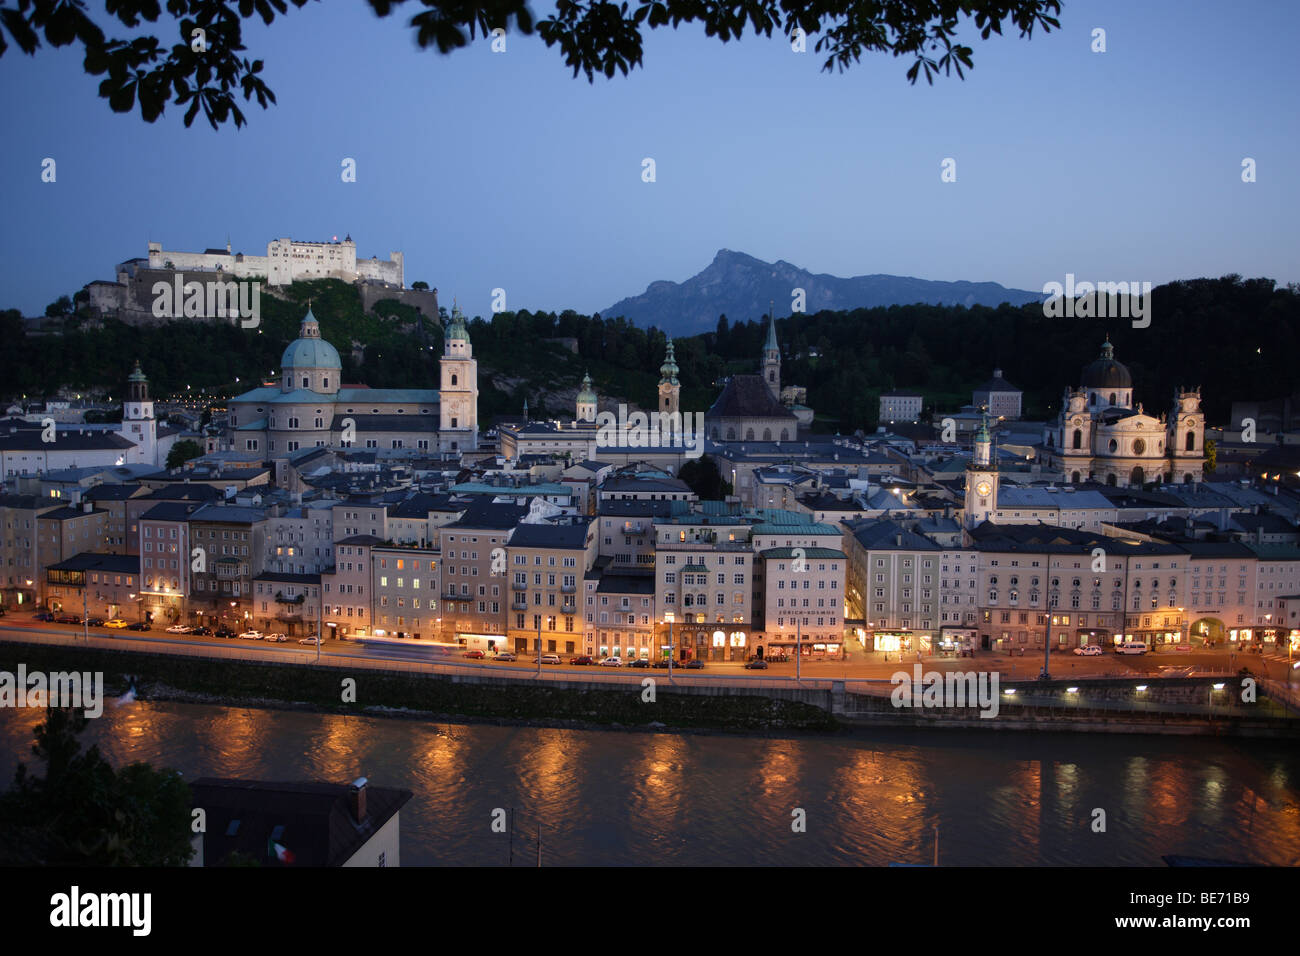 Austria, Salzburgo, noche, vista de la Altstadt, el casco antiguo, con el río Salzach y Fortaleza de Hohensalzburg Foto de stock